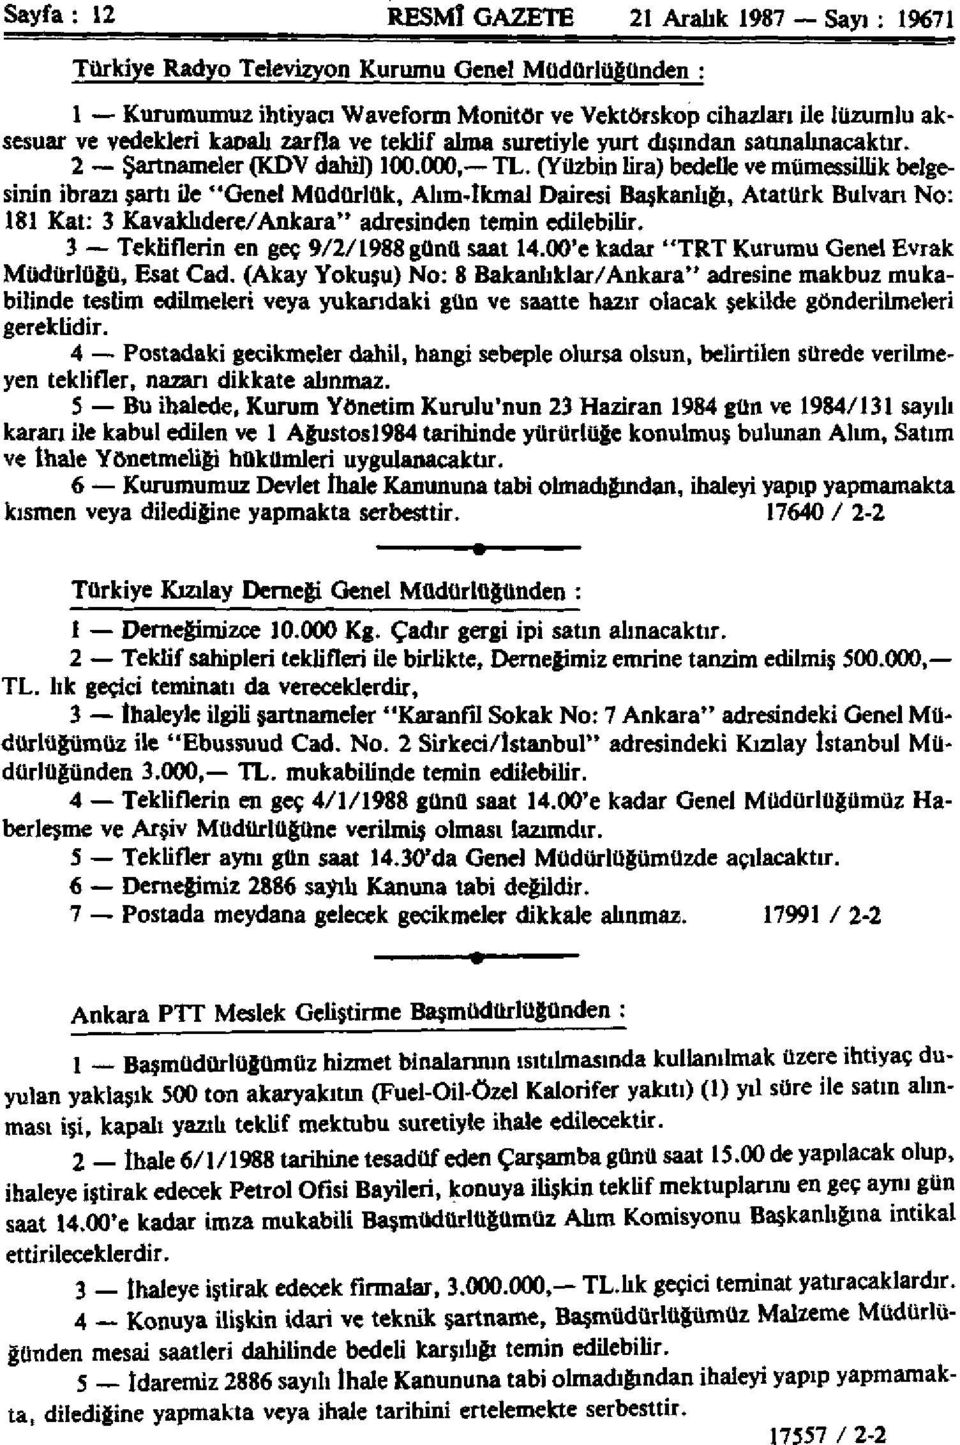 (Yüzbin lira) bedelle ve mümessillik belgesinin ibrazı şartı ile "Genel Müdürlük, Alım-tkmal Dairesi Başkanlığı, Atatürk Bulvarı No: 181 Kat: 3 Kavaklıdere/Ankara" adresinden temin edilebilir.